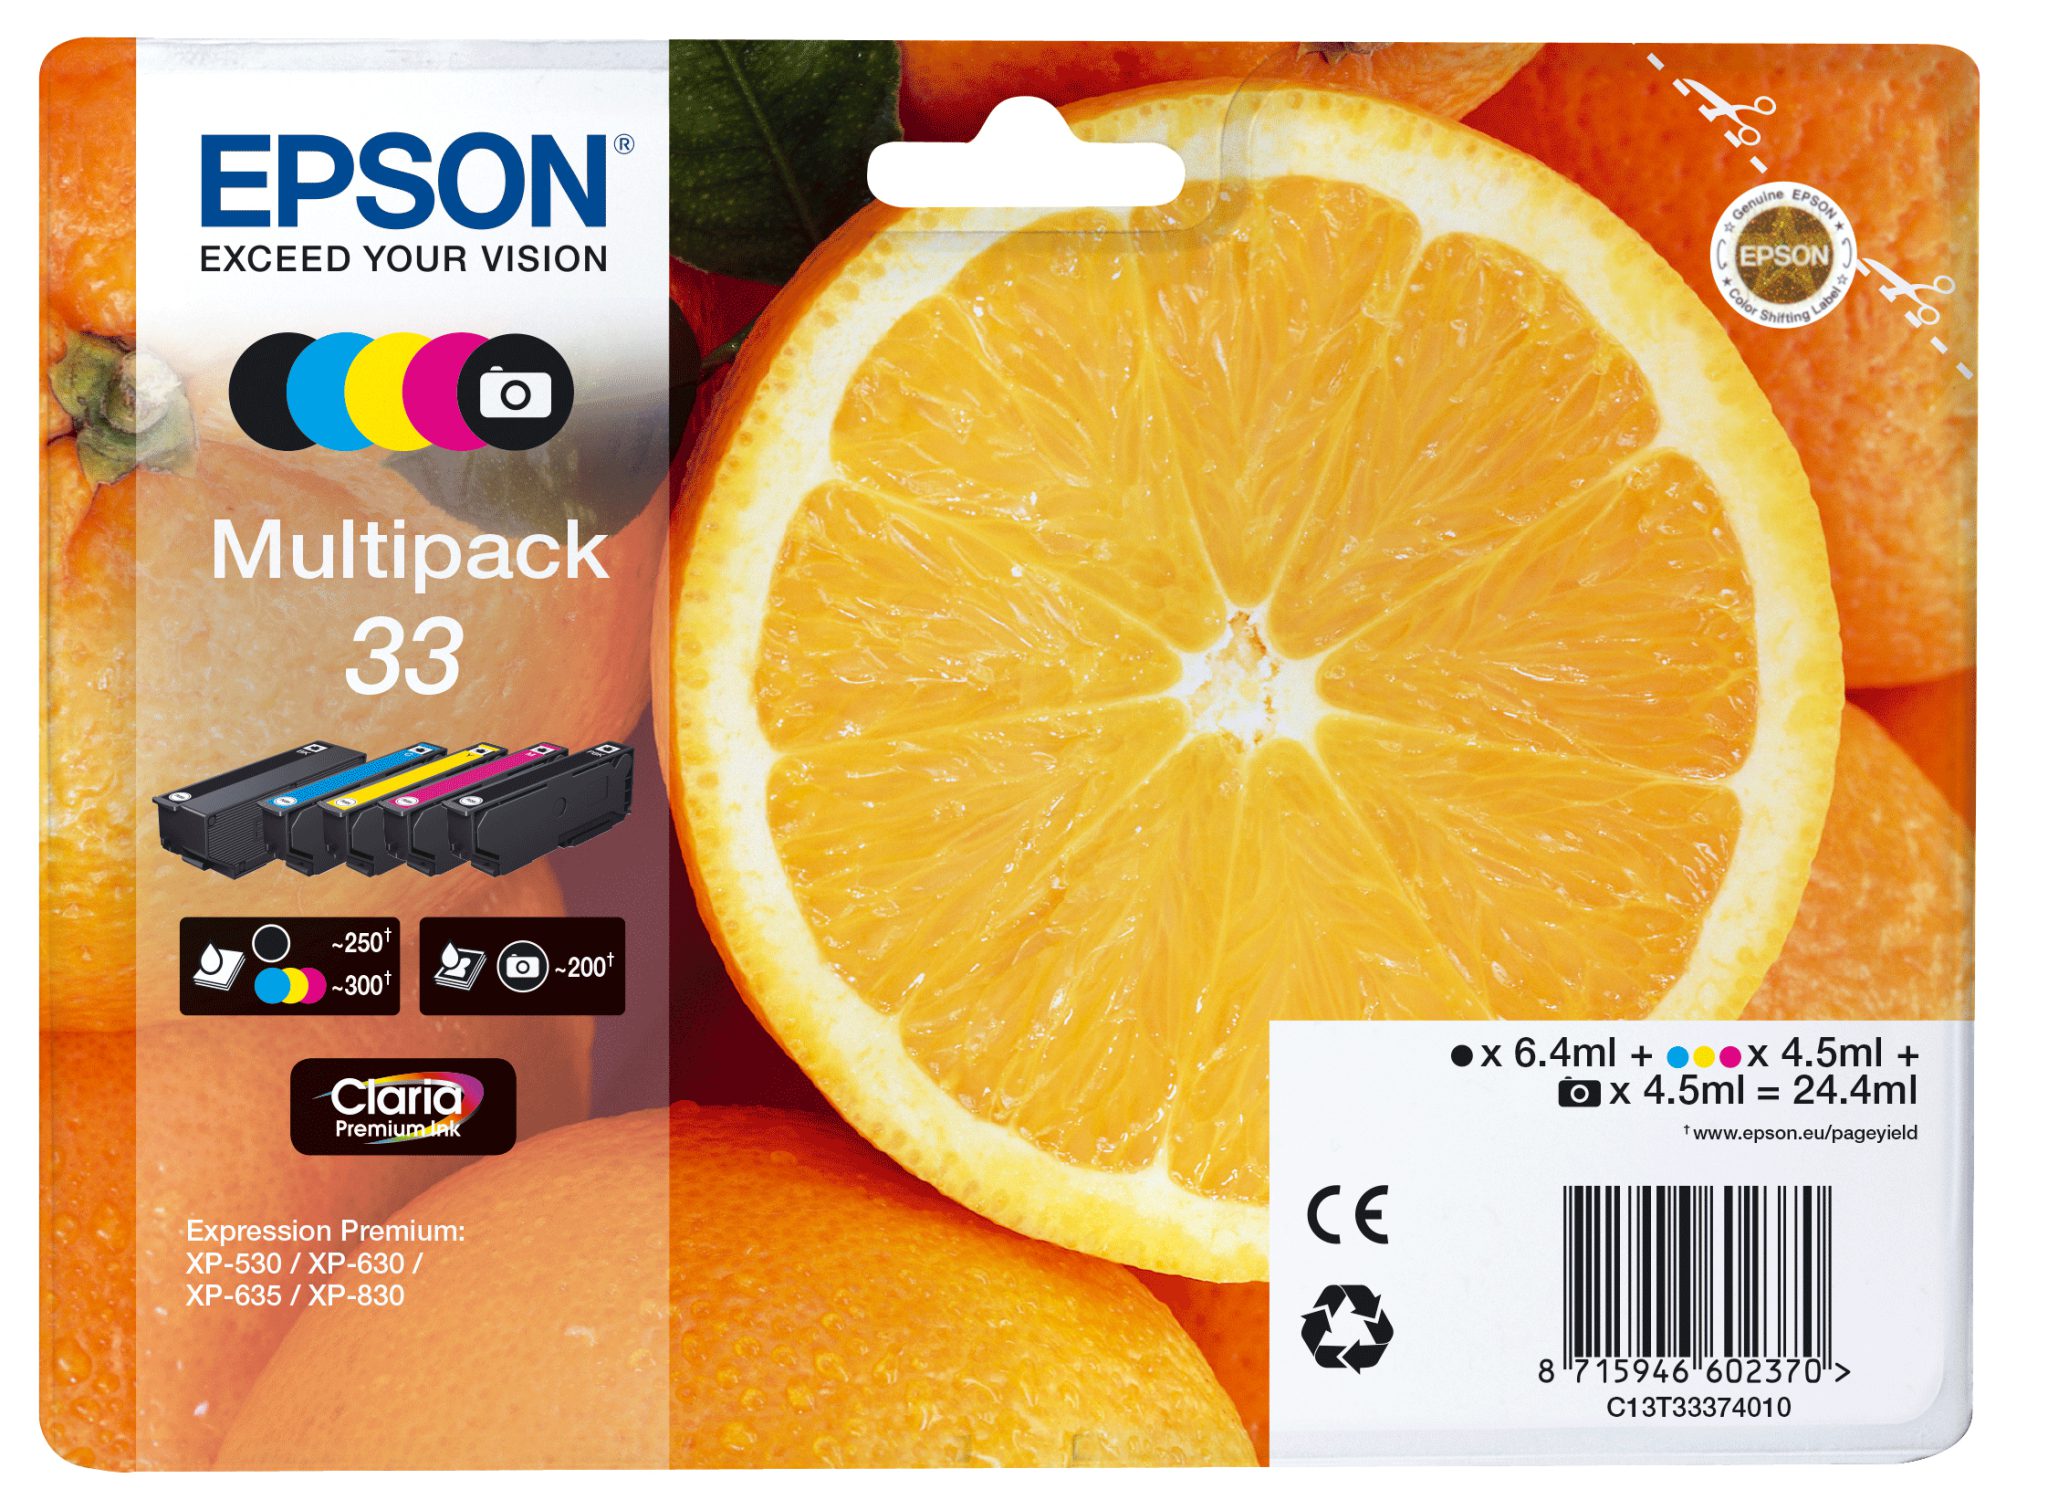 Epson multipack oranges alarmed - claria premium ink